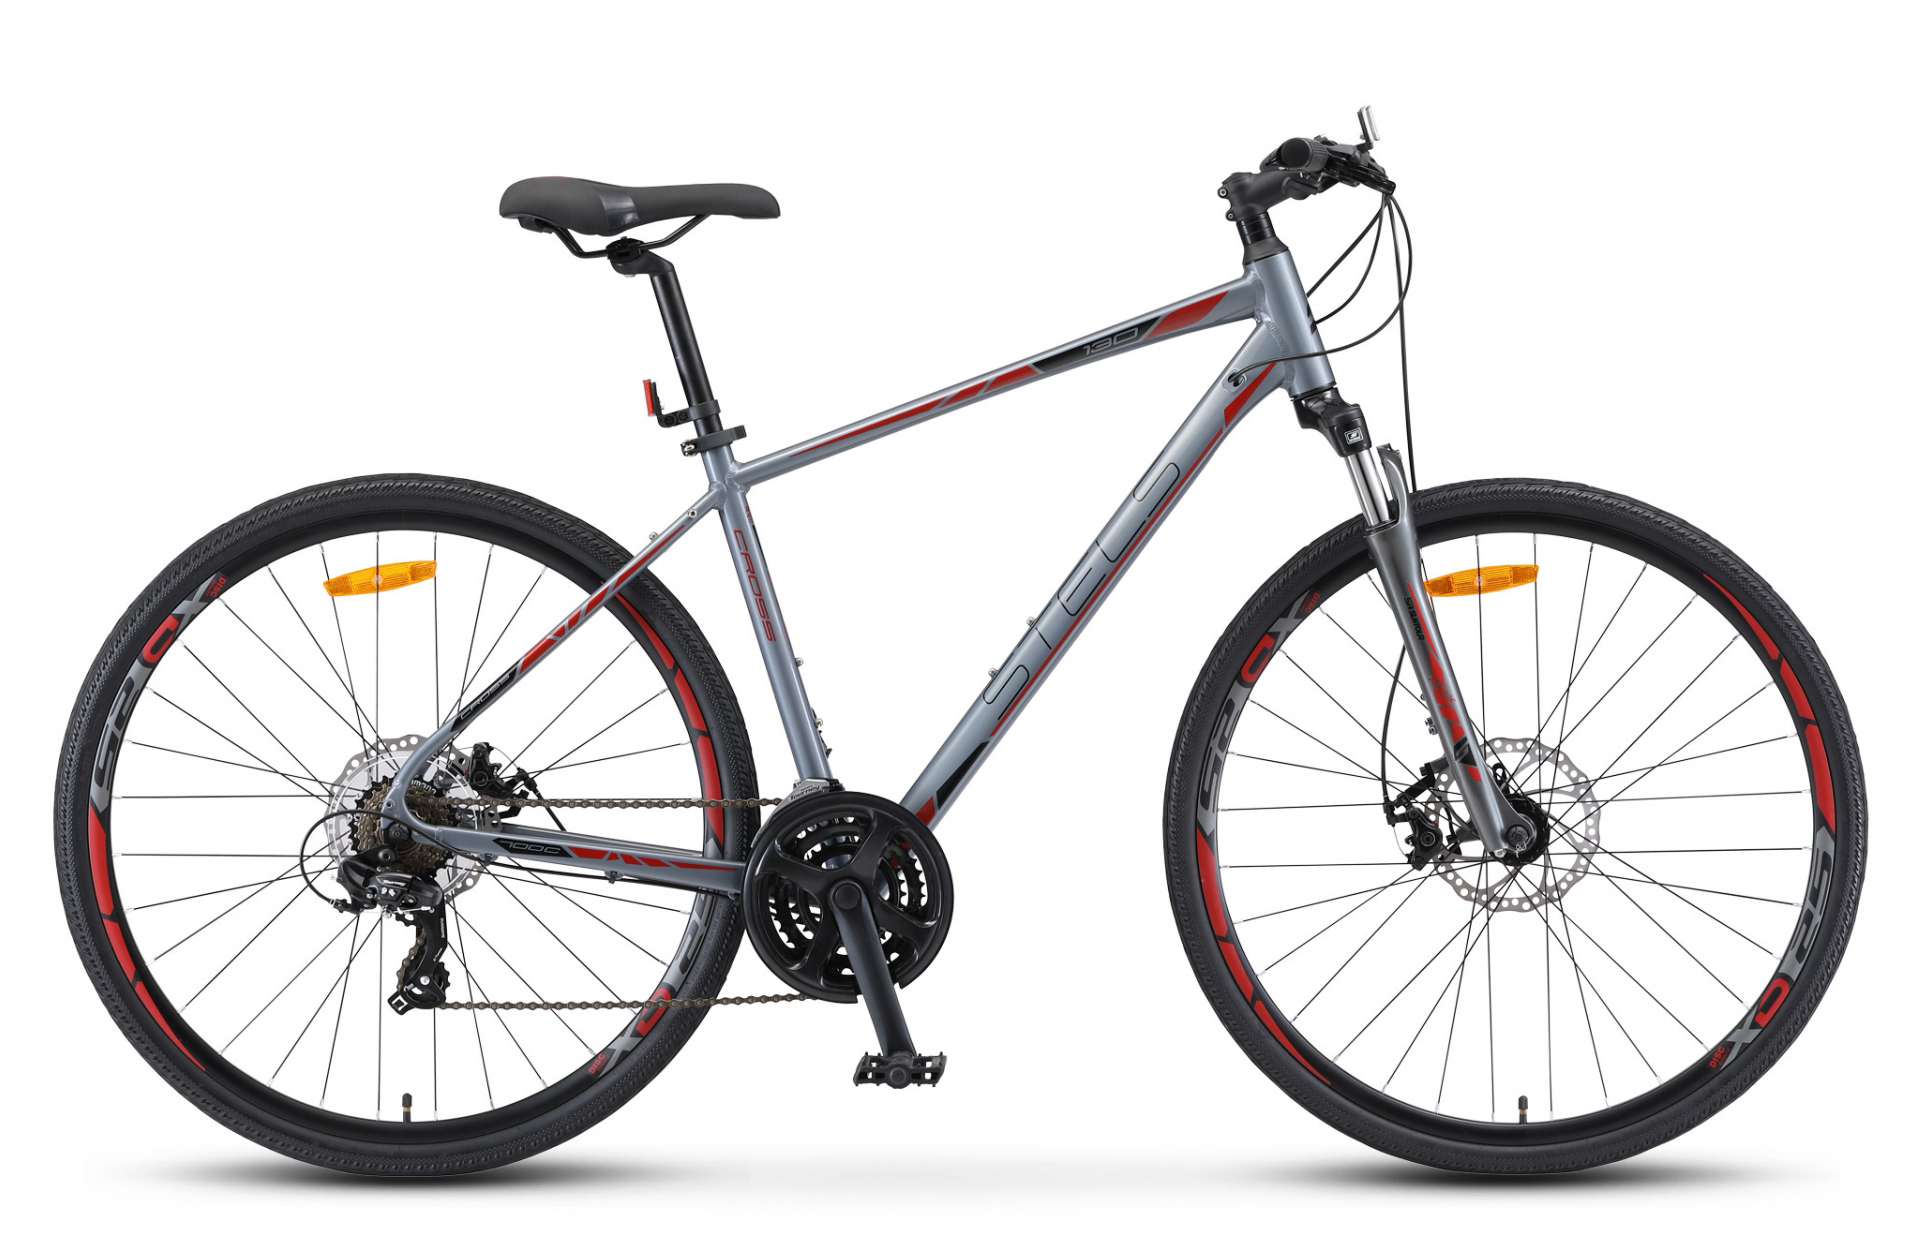  Отзывы о Городском велосипеде Stels Cross 130 MD Gent 28 (V010) 2019